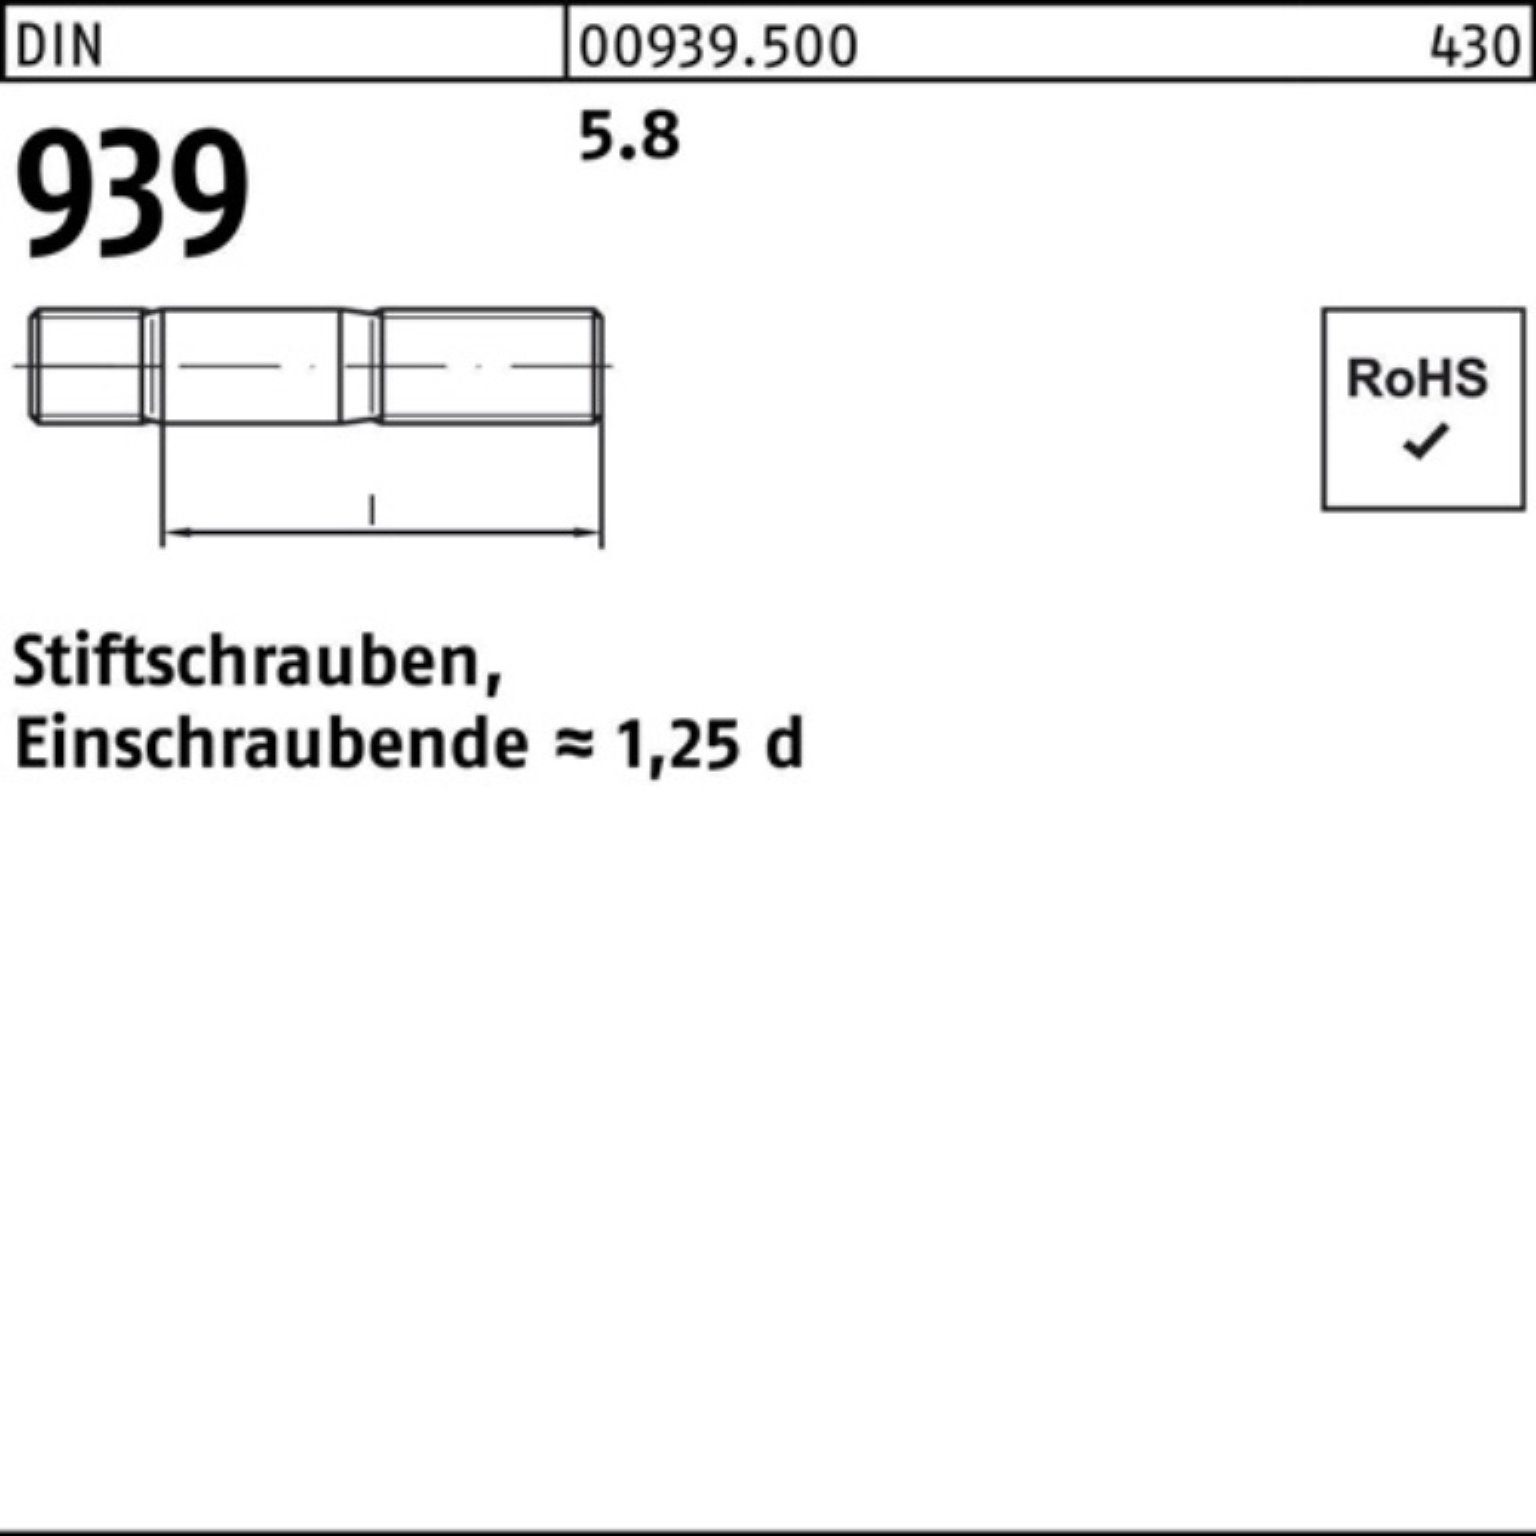 M12x Stiftschraube Pack 100er 939 Stiftschraube Reyher 75 DIN 5.8 50 S Einschraubende=1,25d